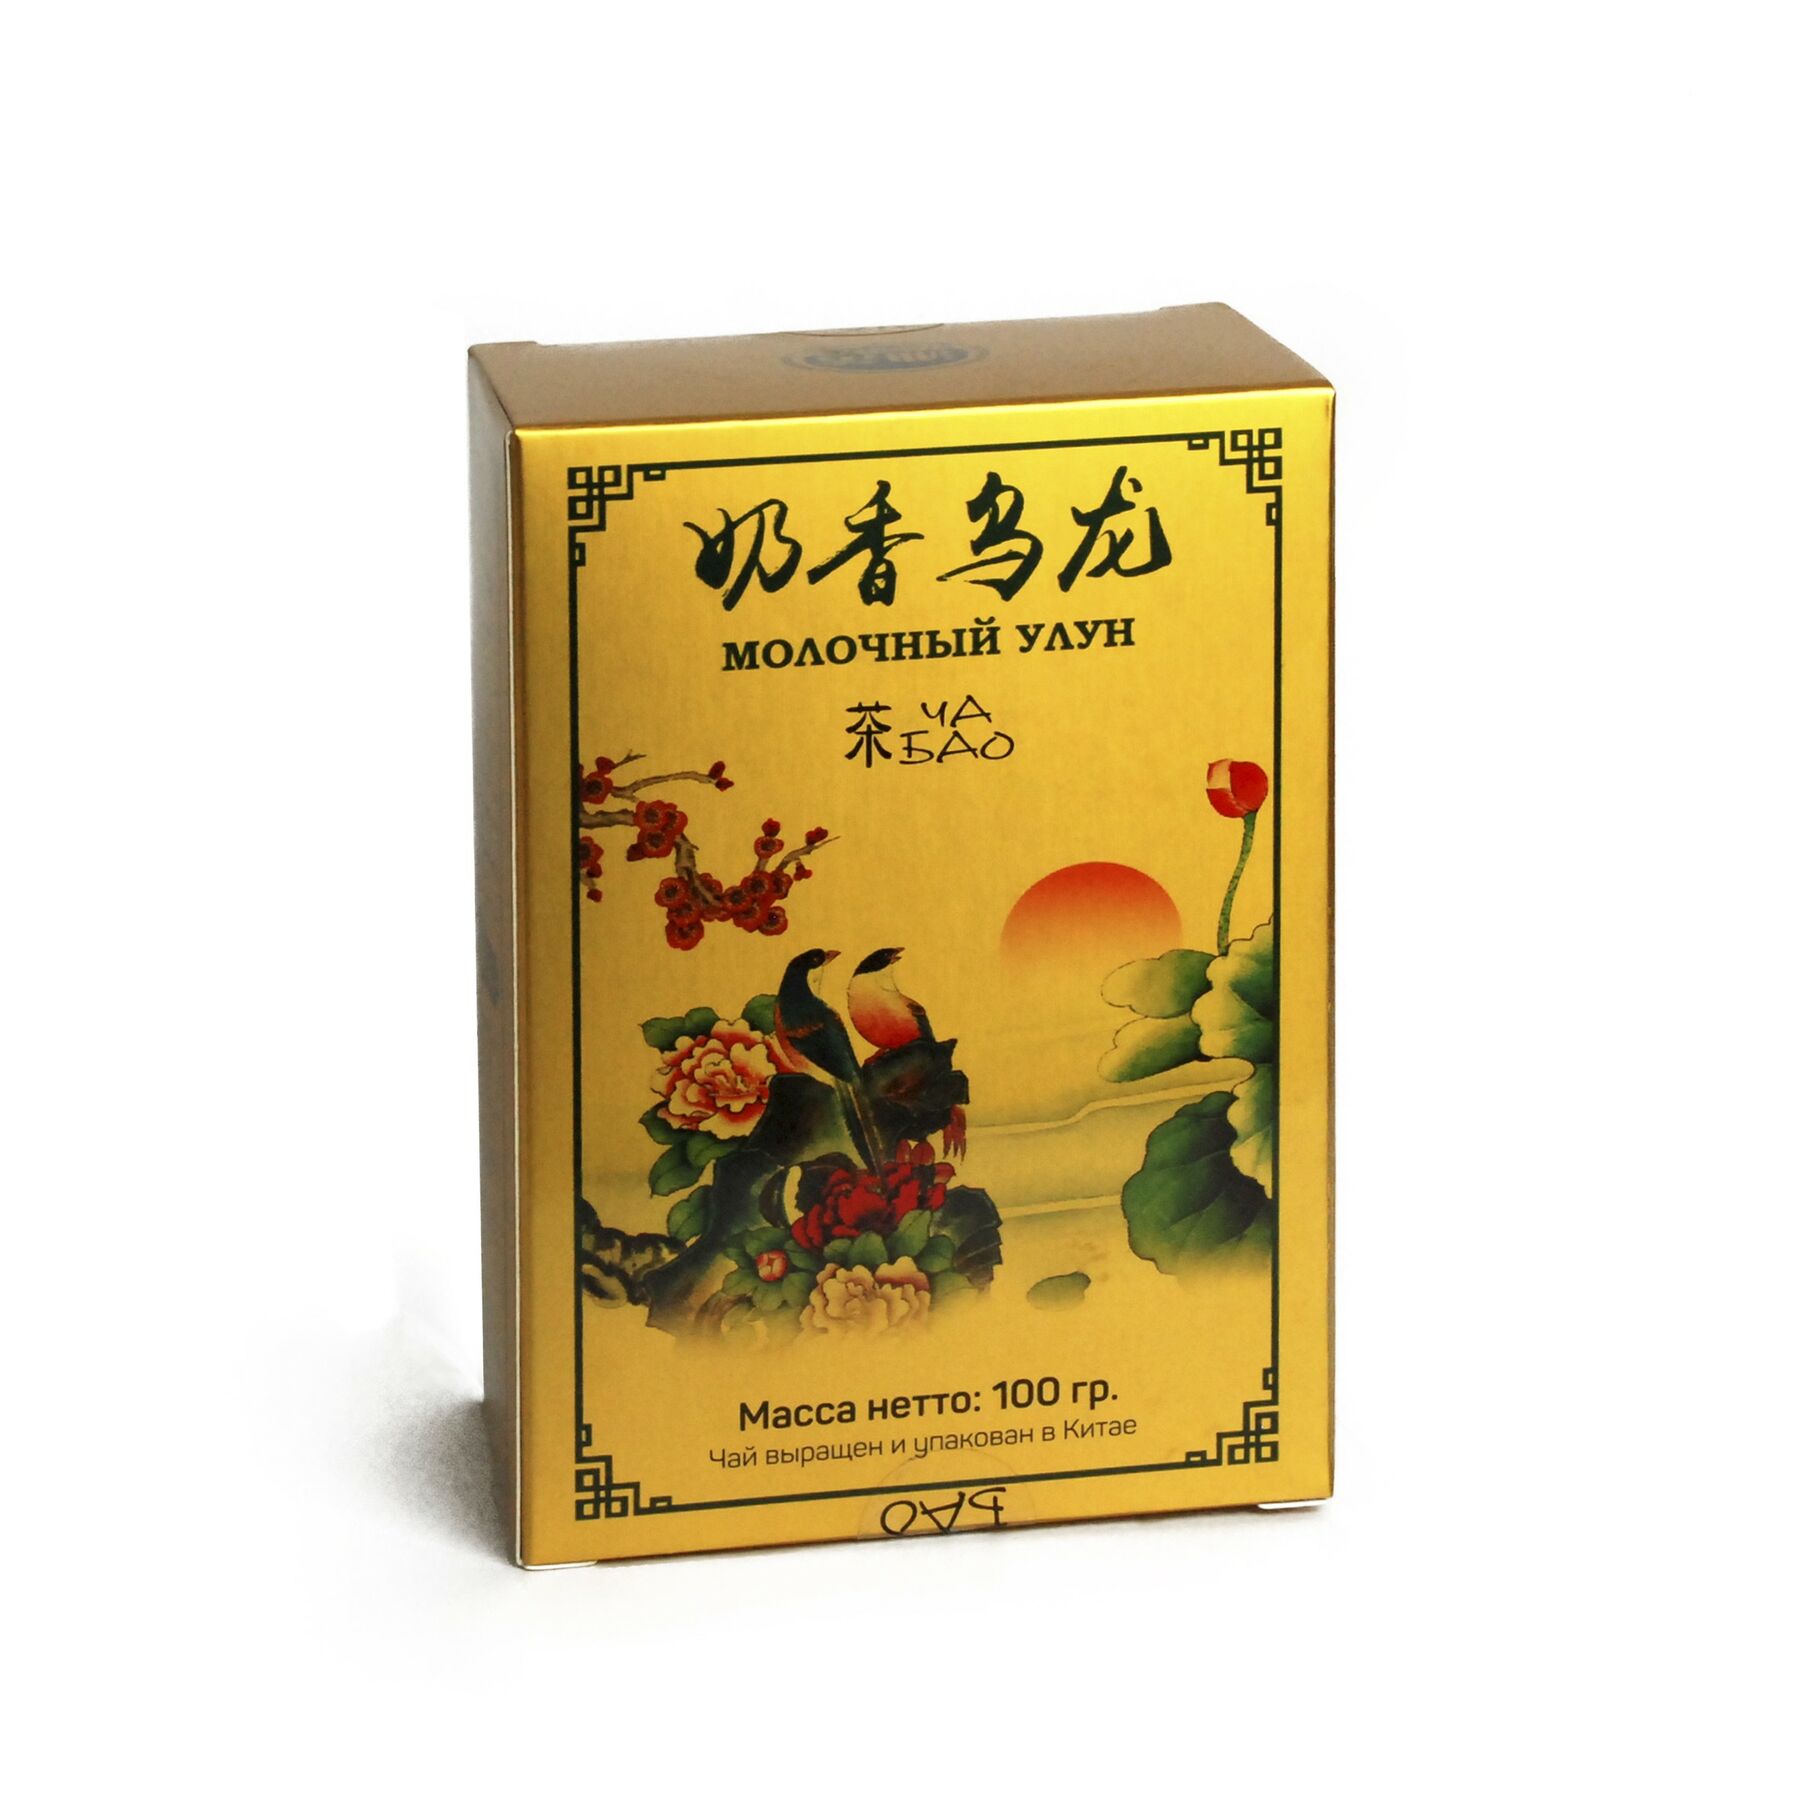 Чай "Ча Бао" Молочный улун,  Китай, 100 гр.